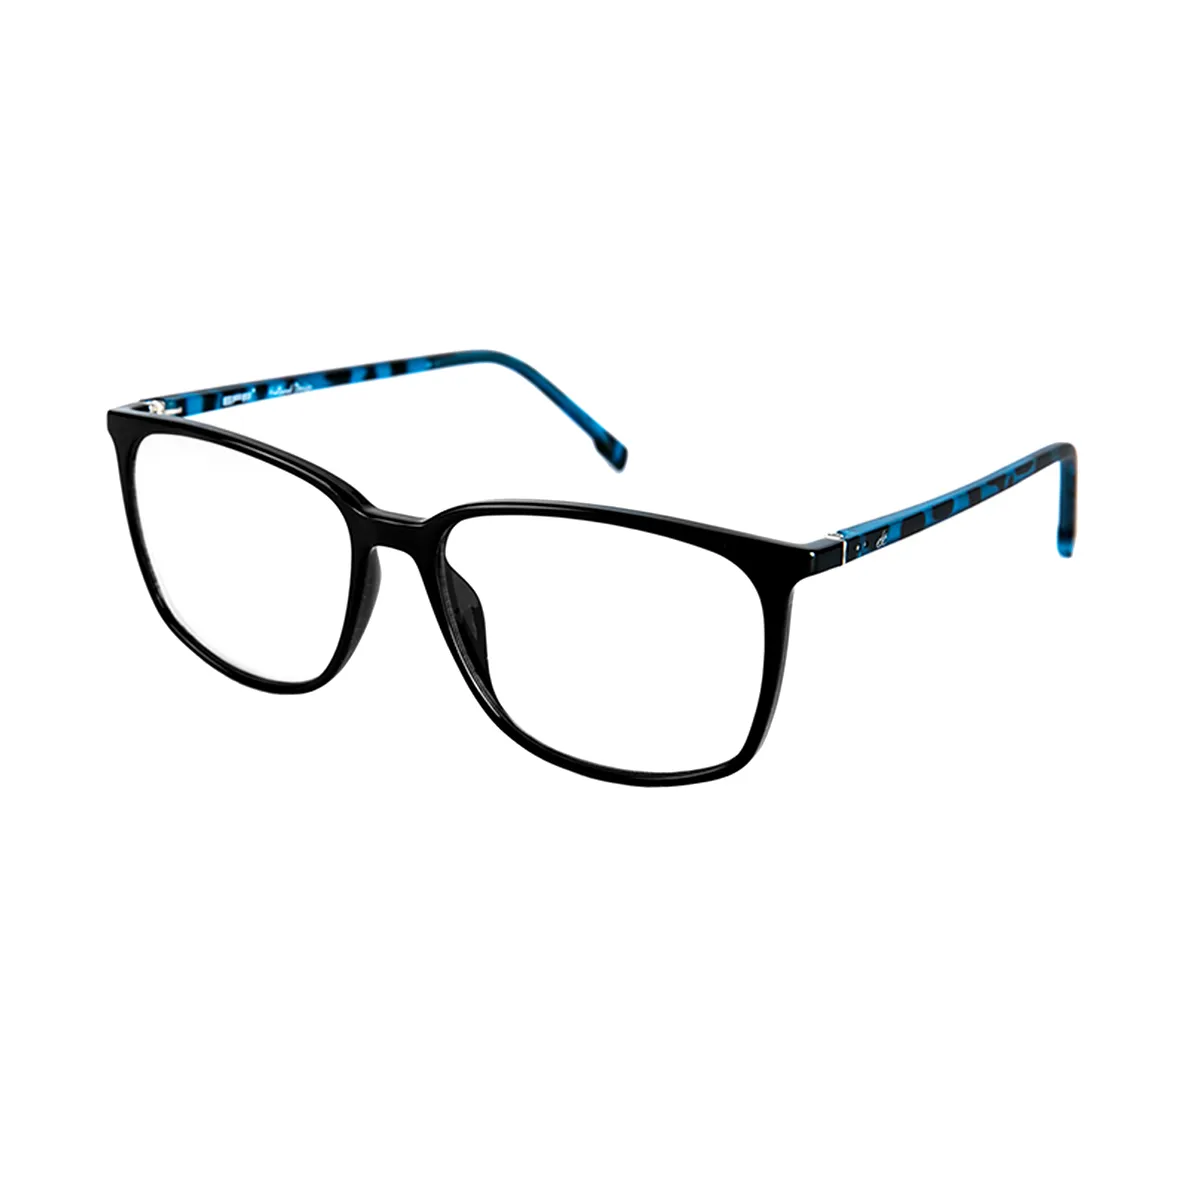 Cahill - Square  Glasses for Men & Women